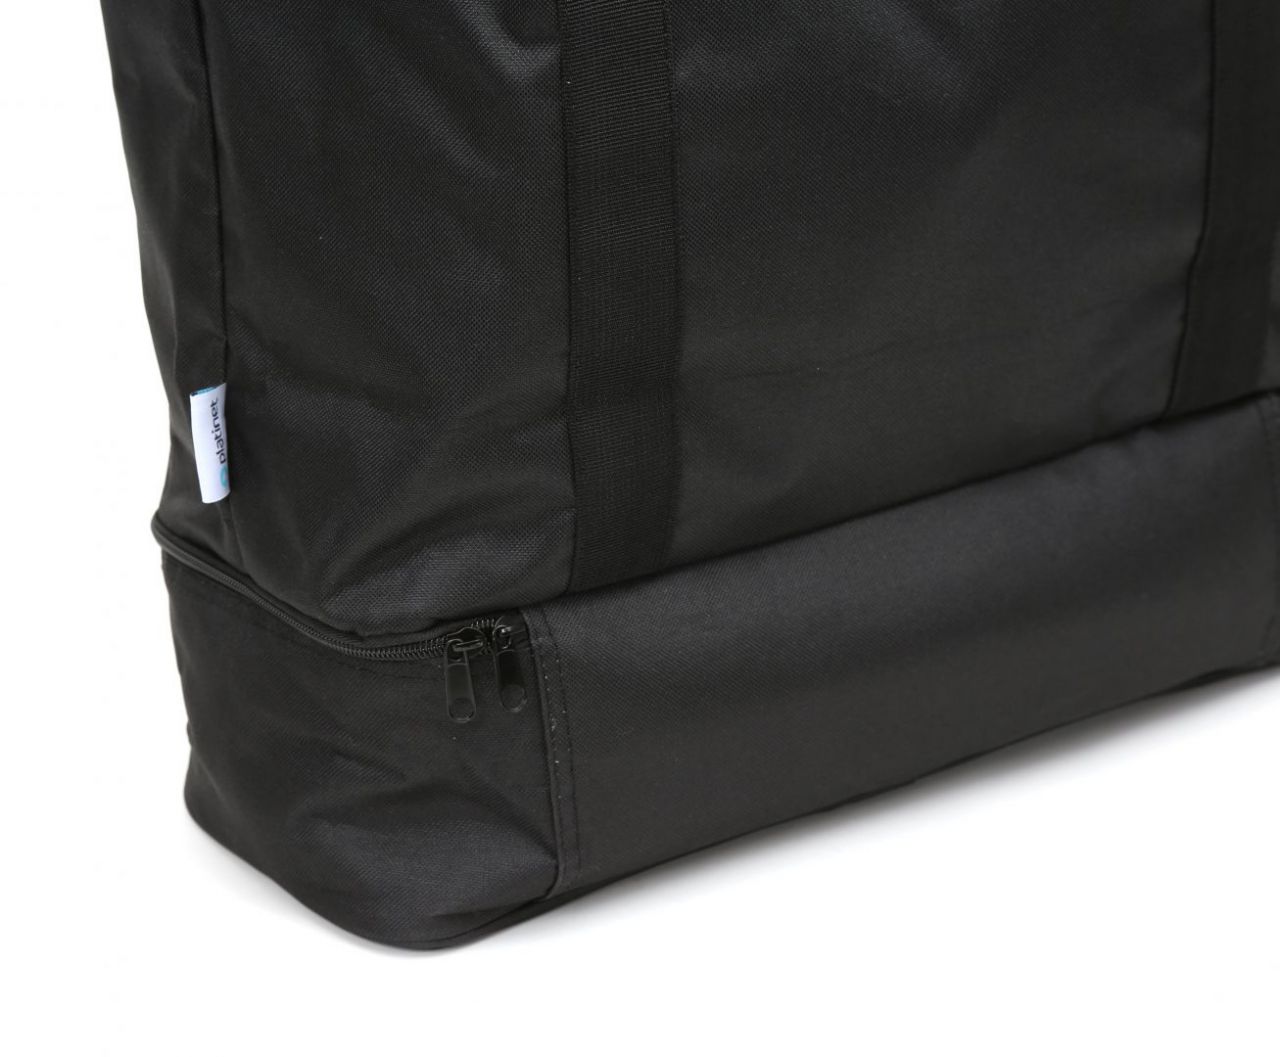 Platinet Cooler Bag Bali Black